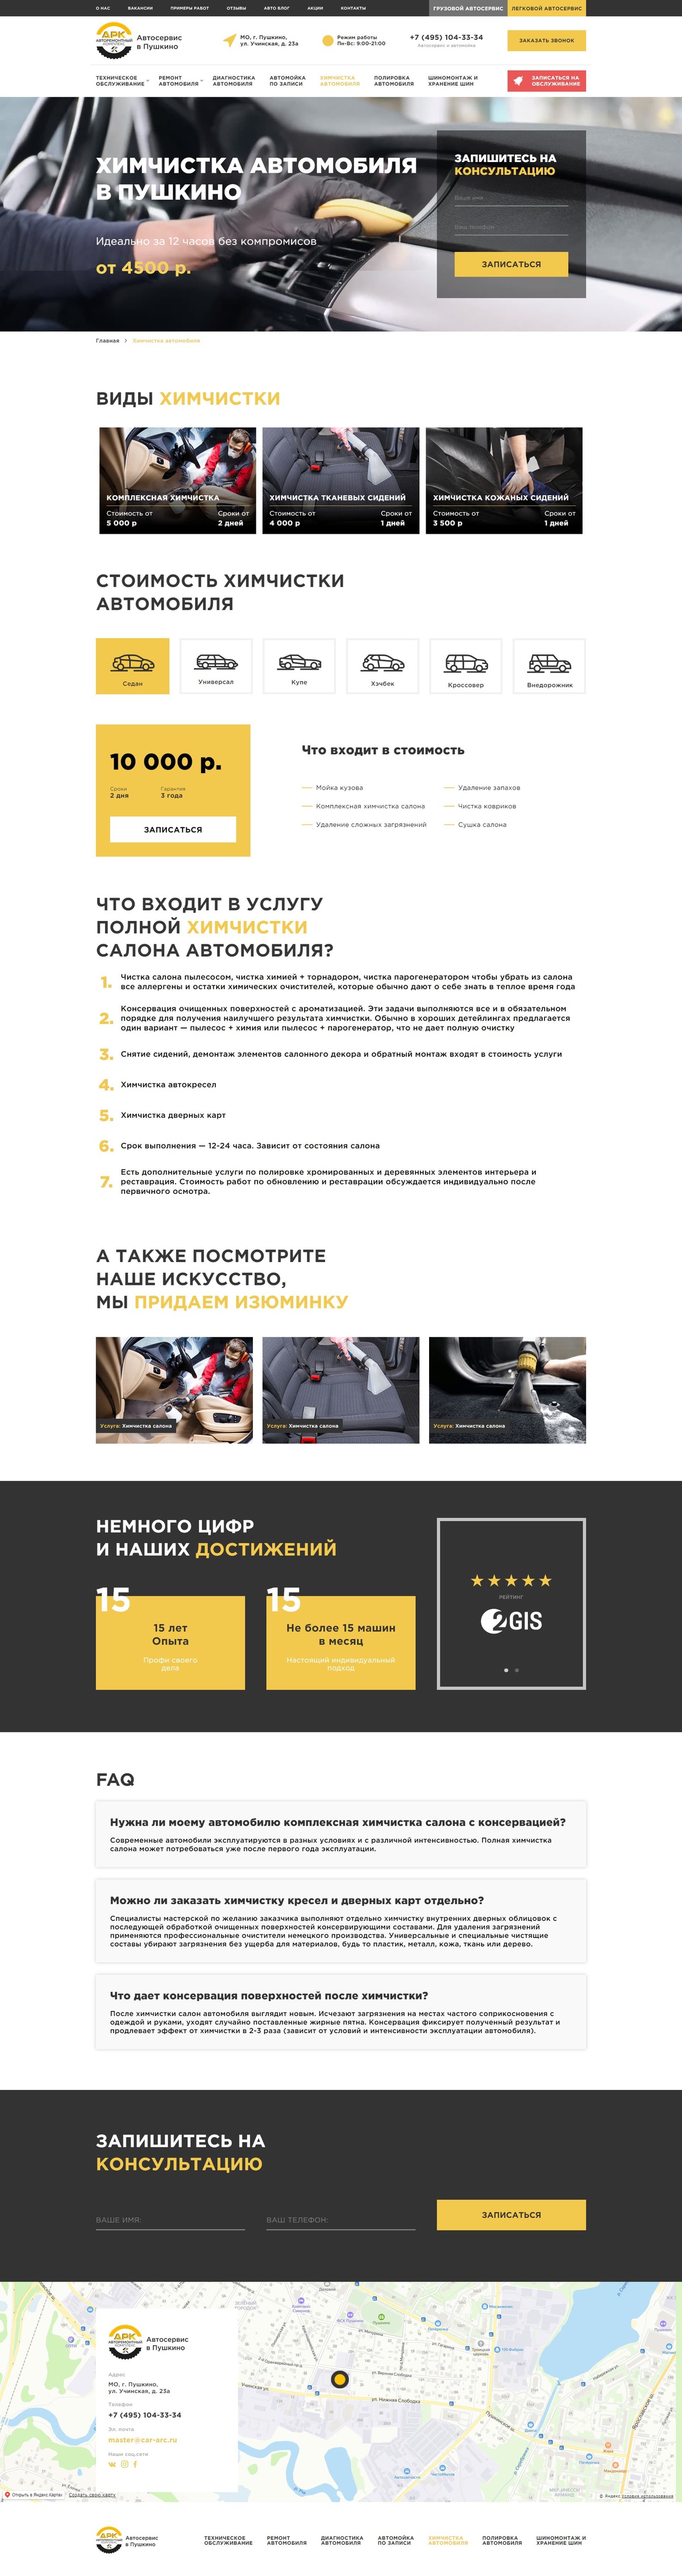 Создание сайта для автосервиса АРК в Пушкино